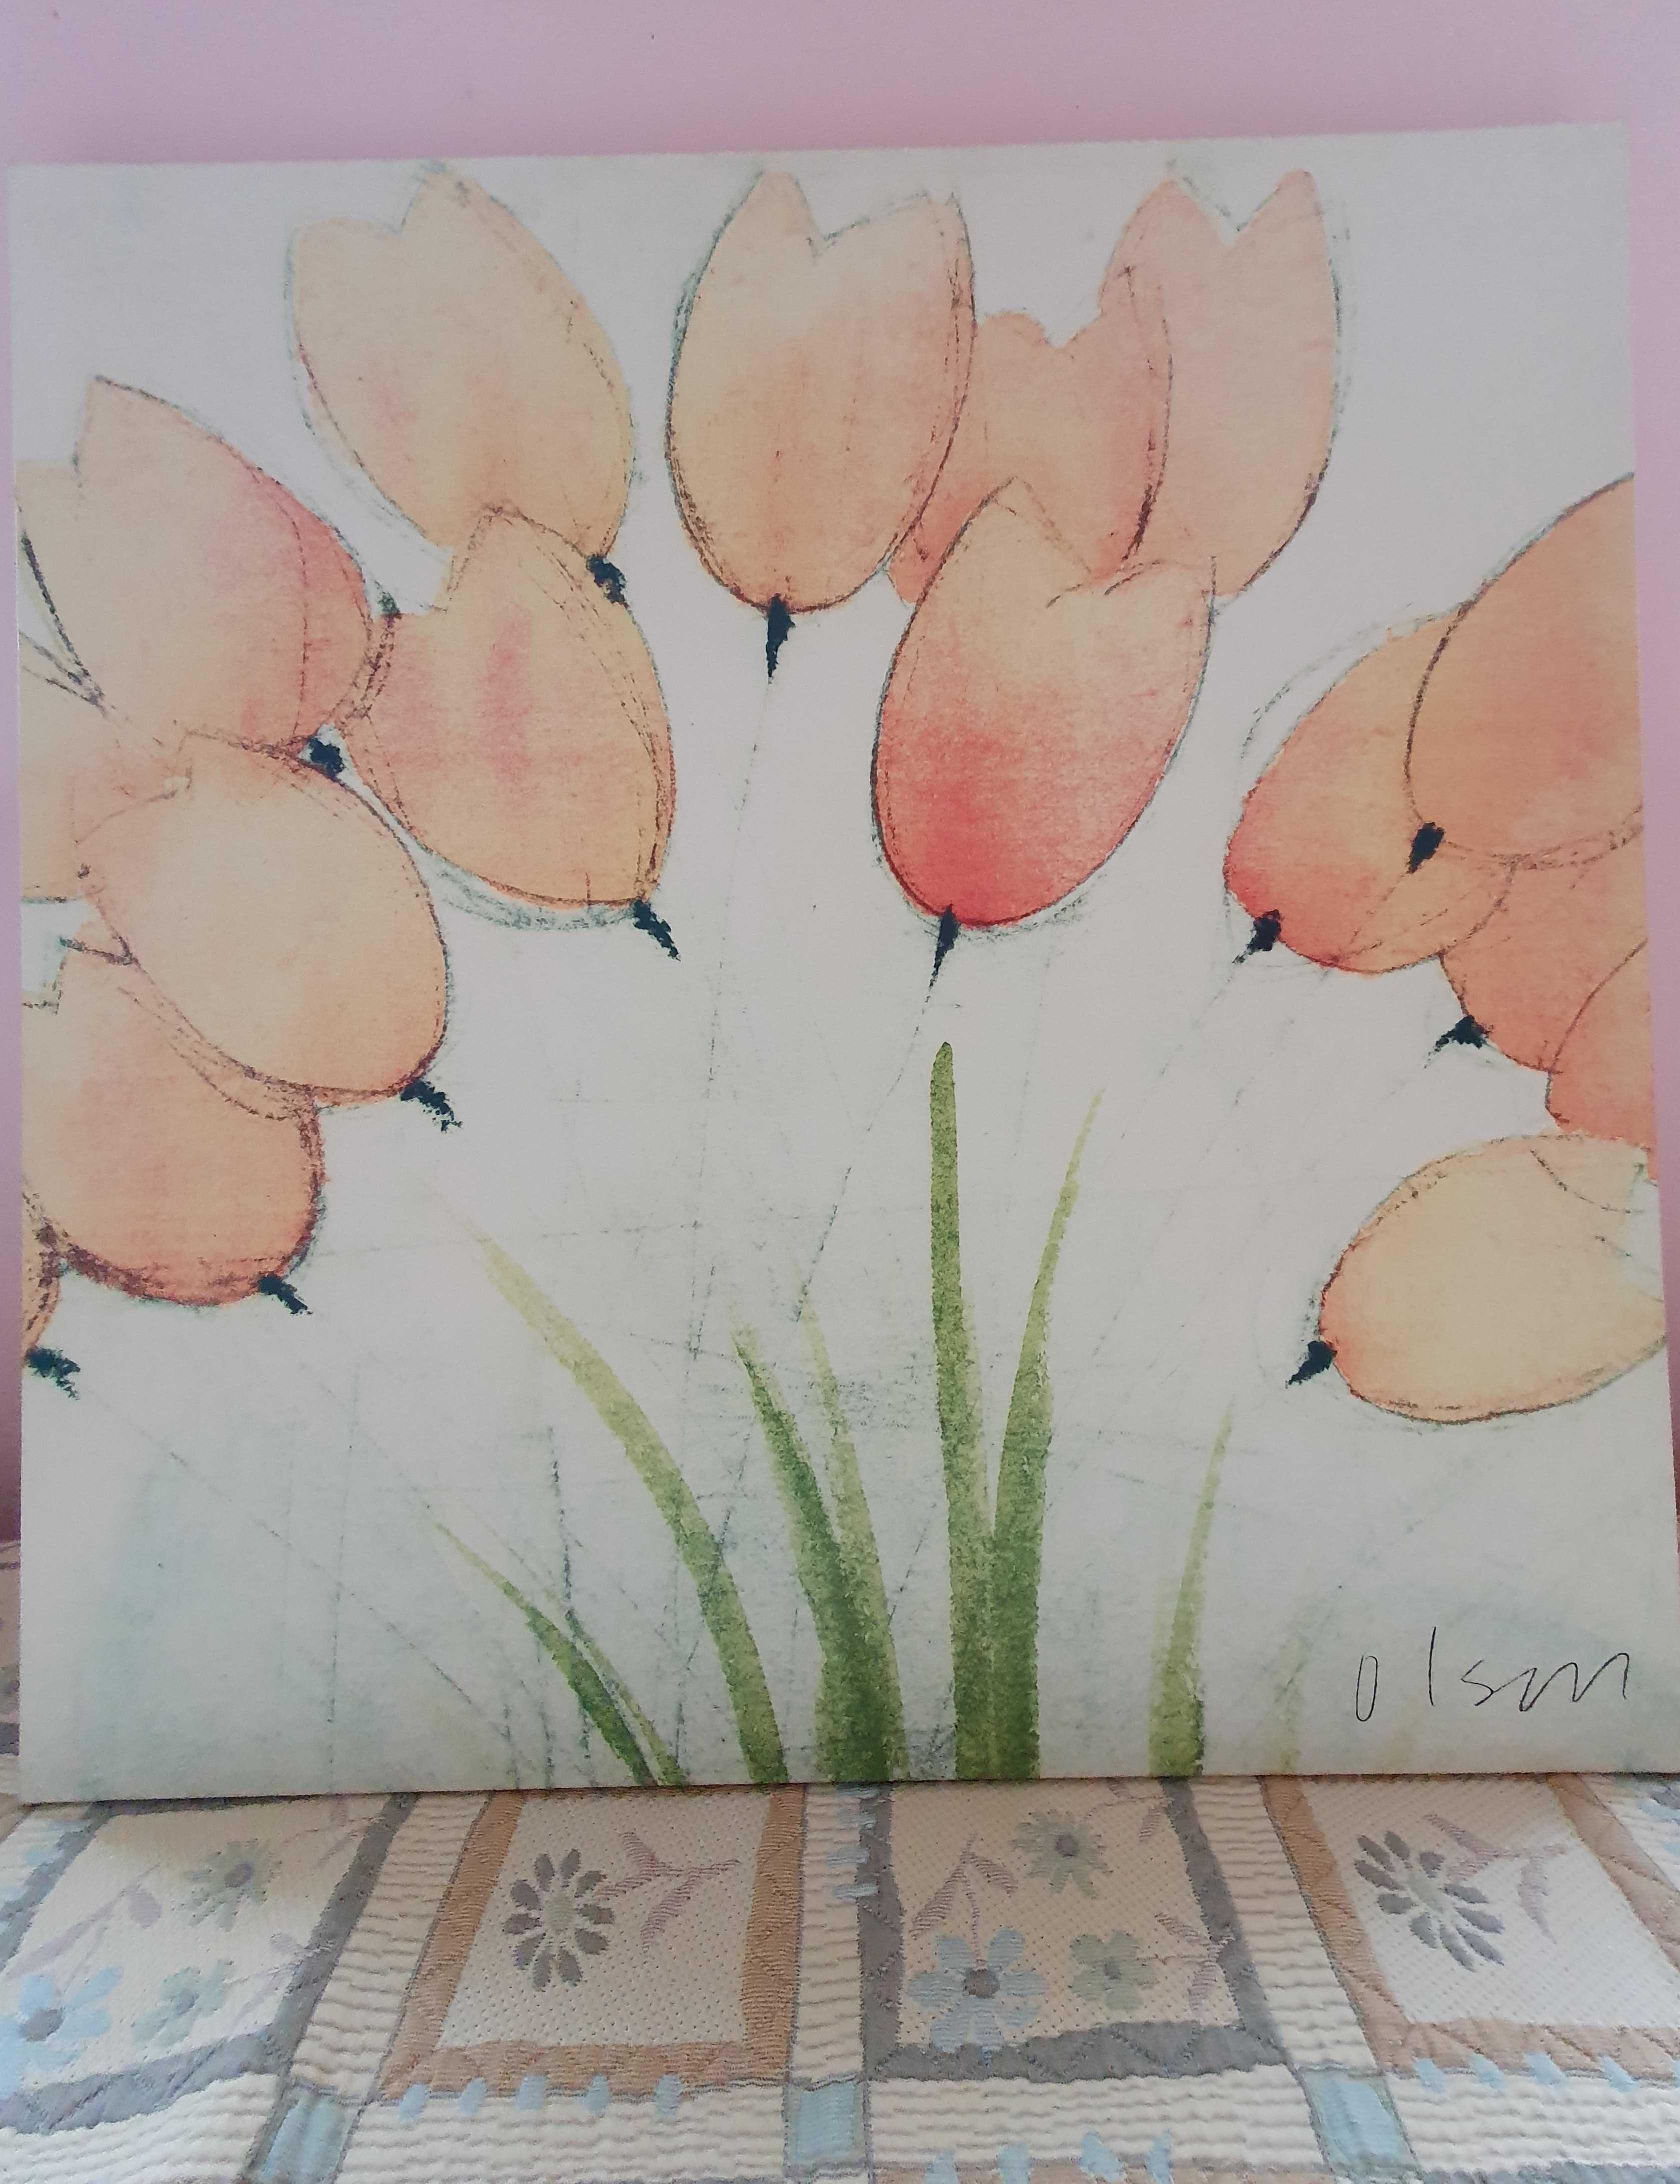 Obraz tulipany w pastelach